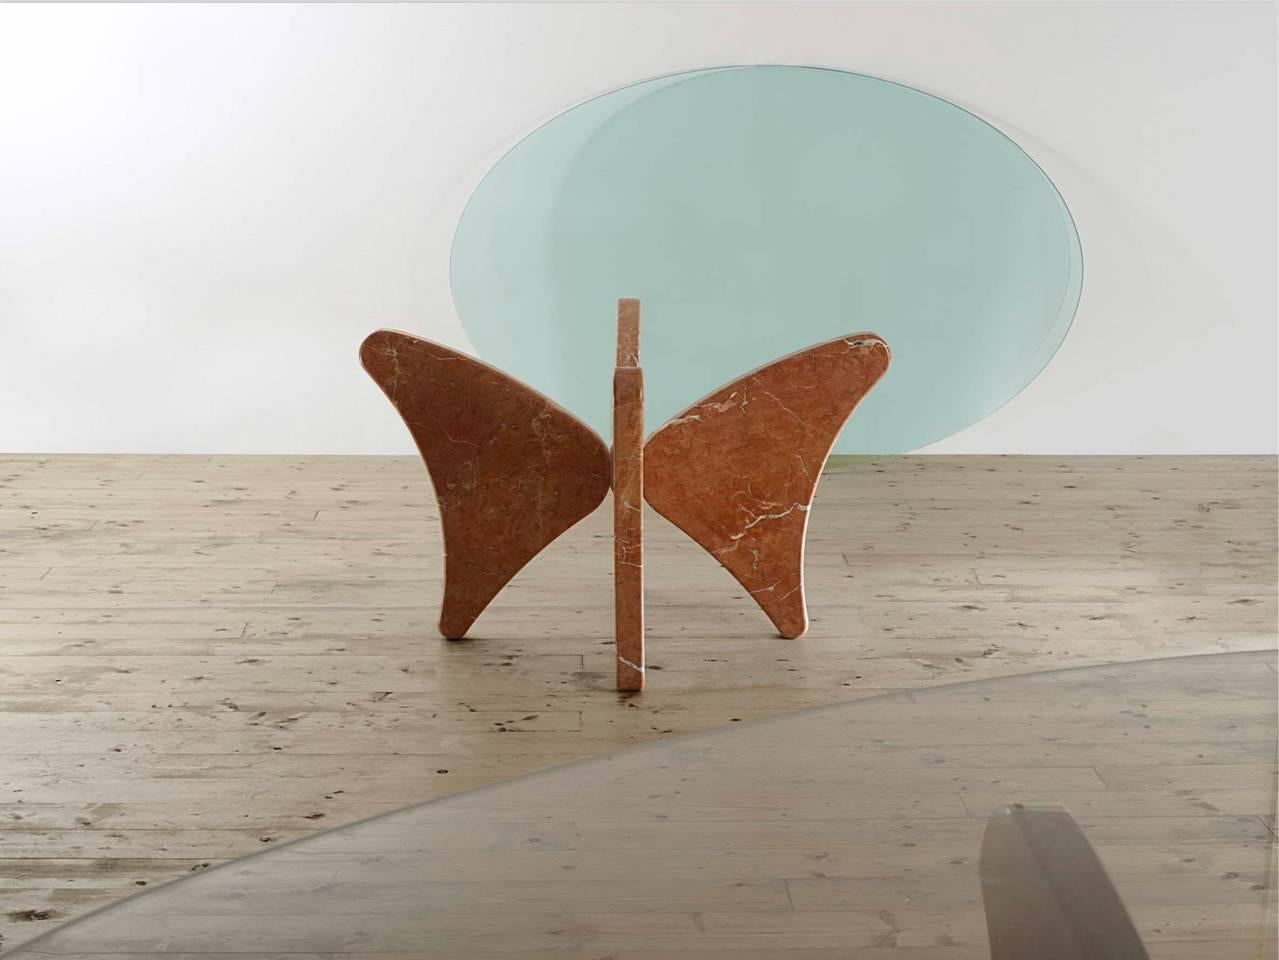  La table Rosso Alicante a été créée par Bruno Vaerini, un architecte/sculpteur italien, en 2009. La table a été inspirée par le retable de Piero Della Francesca placé à Brera. Dans le tableau, la couleur rouge provient du marbre à l'arrière-plan.